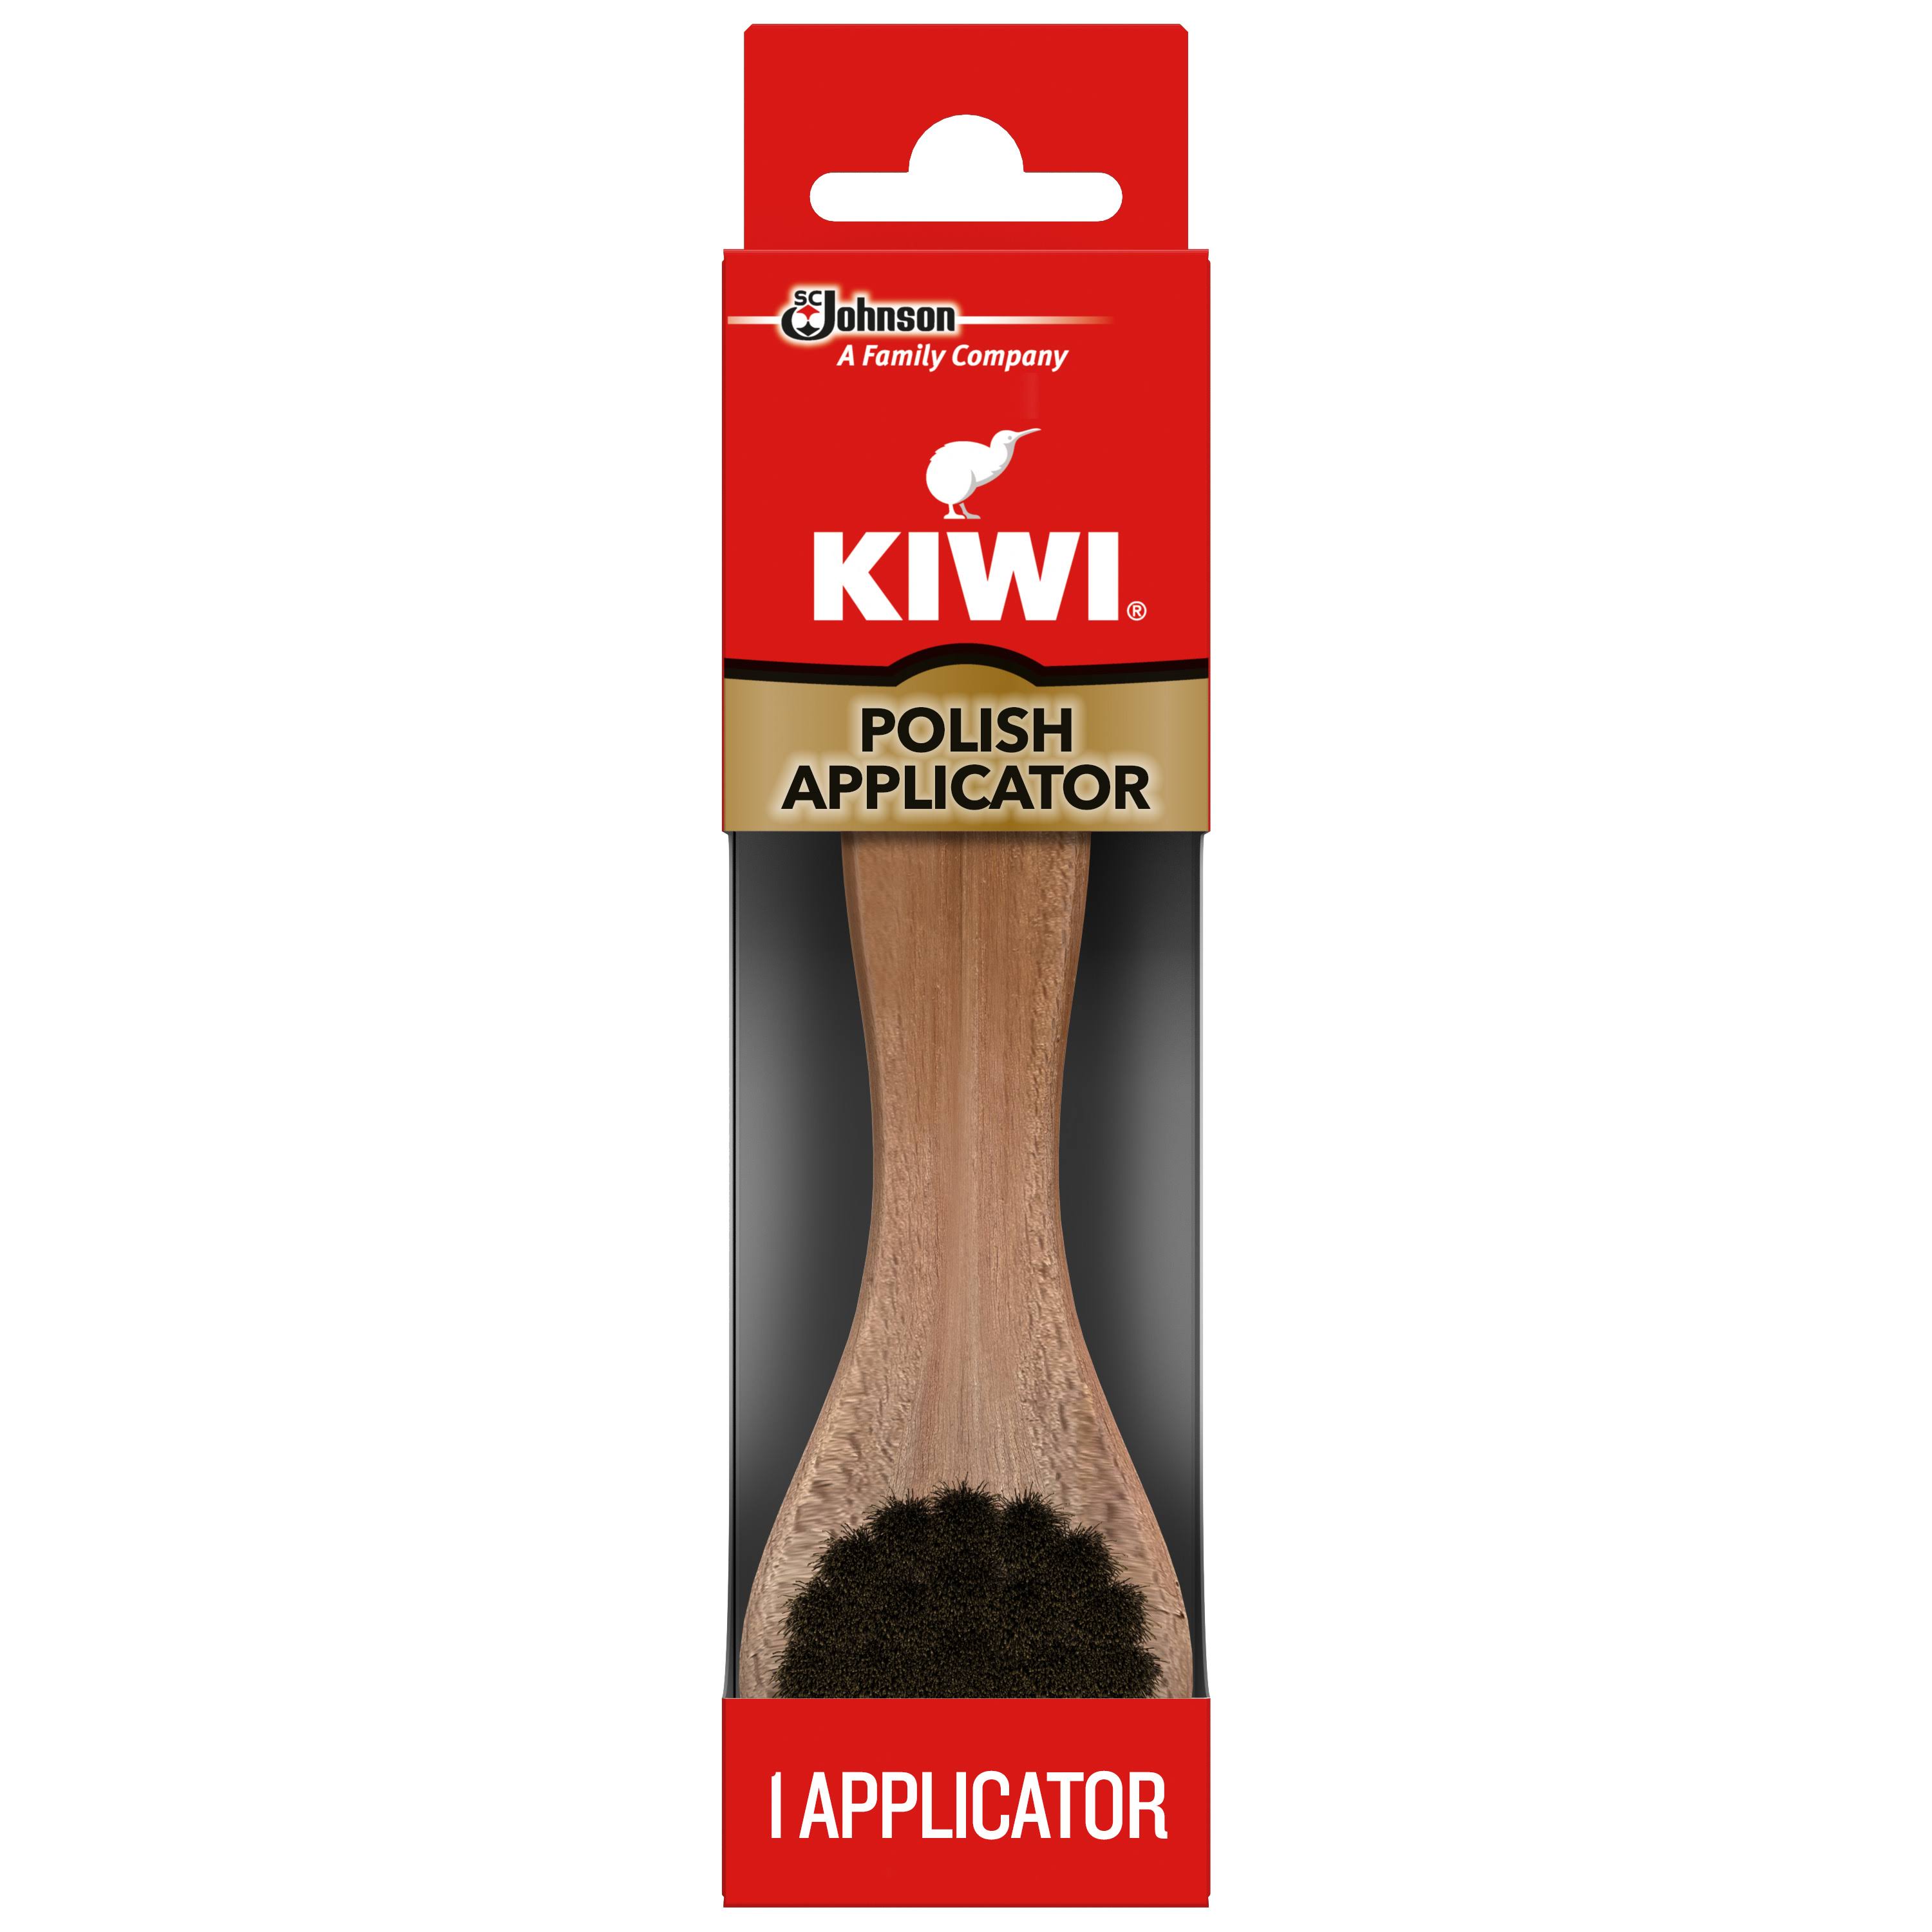 Kiwi Polish Applicator Shoe Brushes